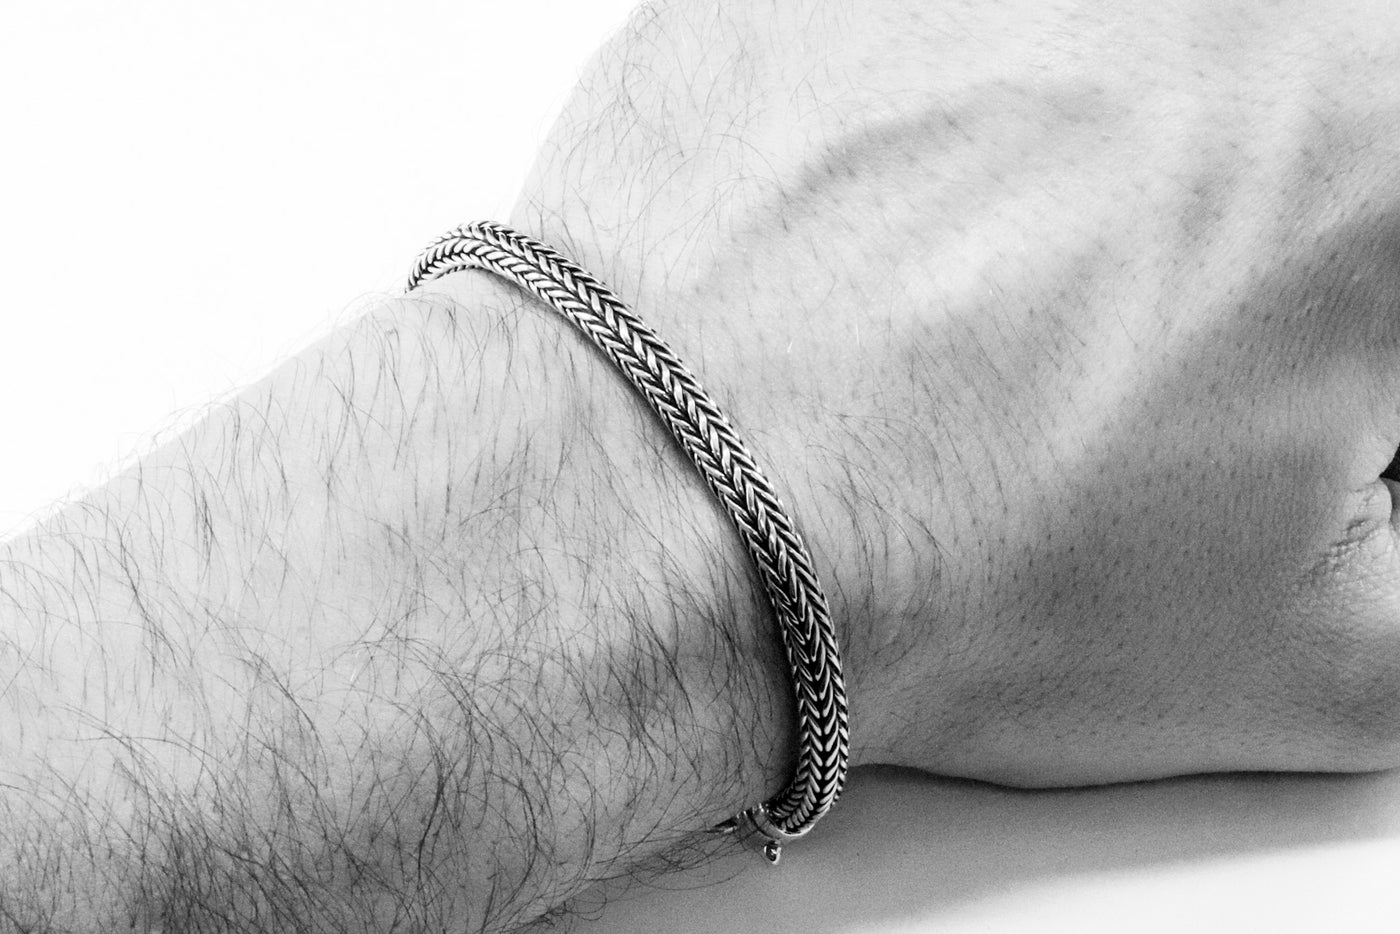 Bear Silver Bracelet